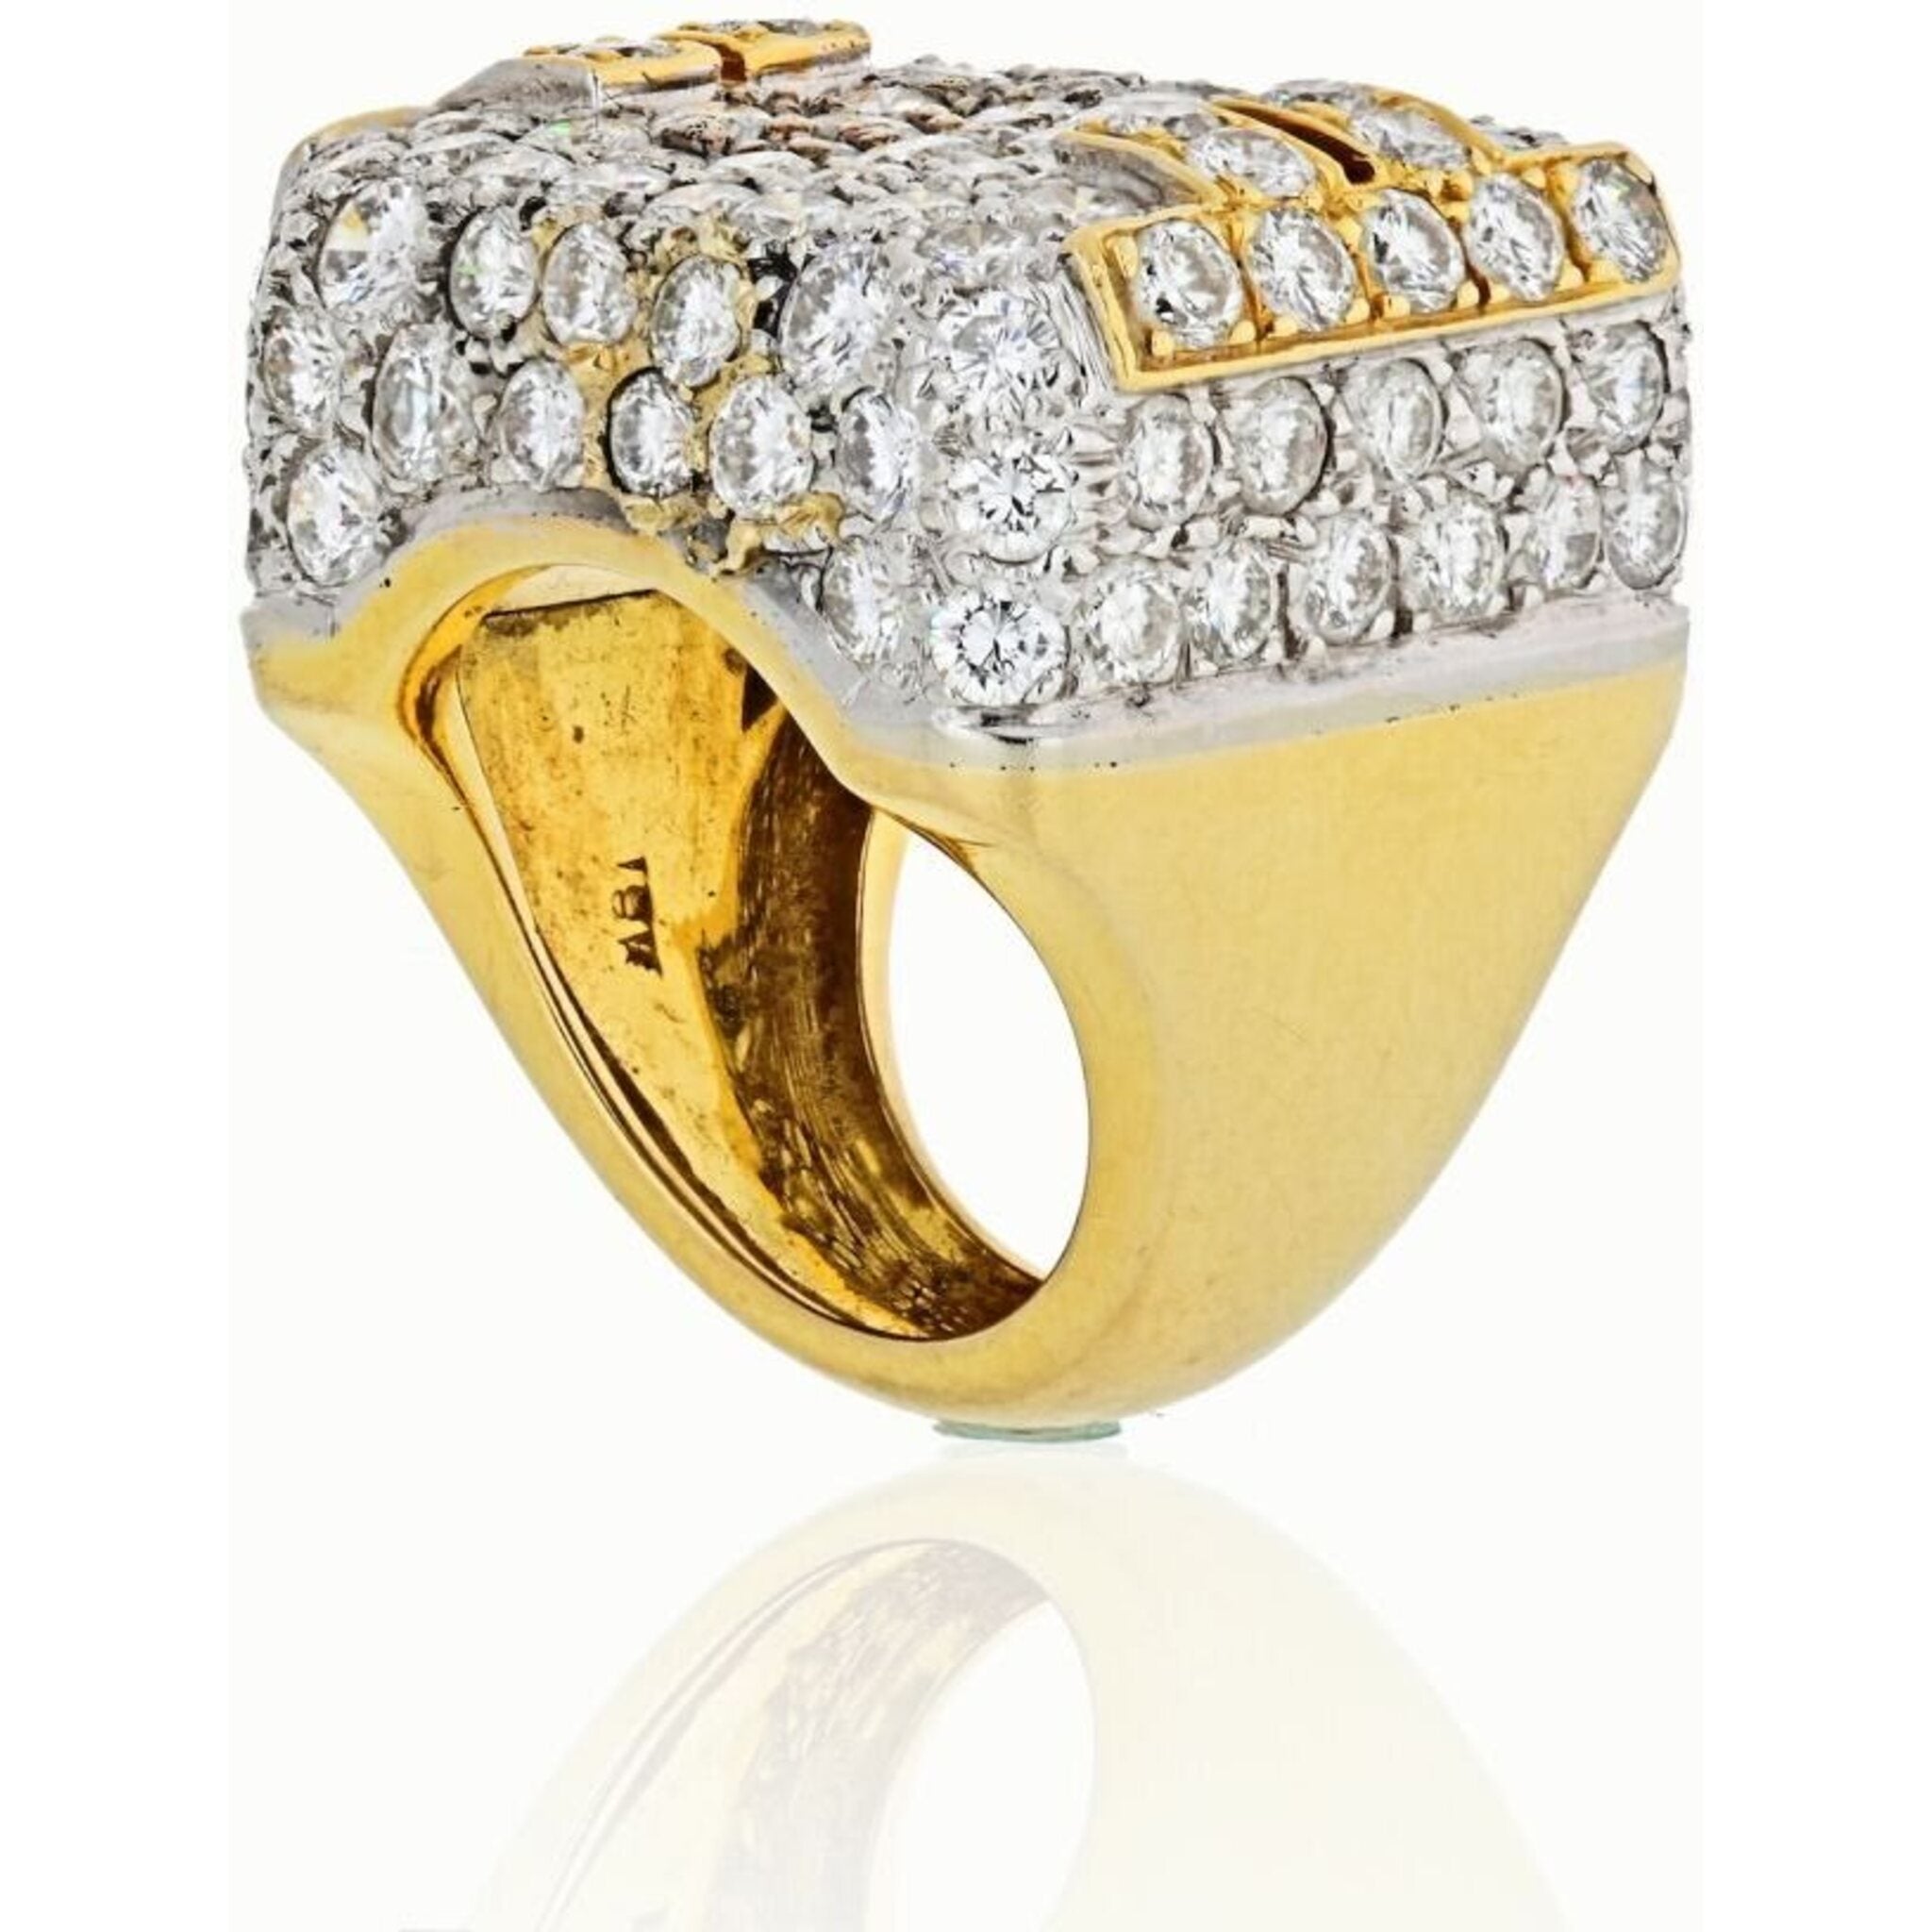 Platinum Rings For Men - Buy Platinum Rings For Men online At Best Prices  In India - Flipkart.com